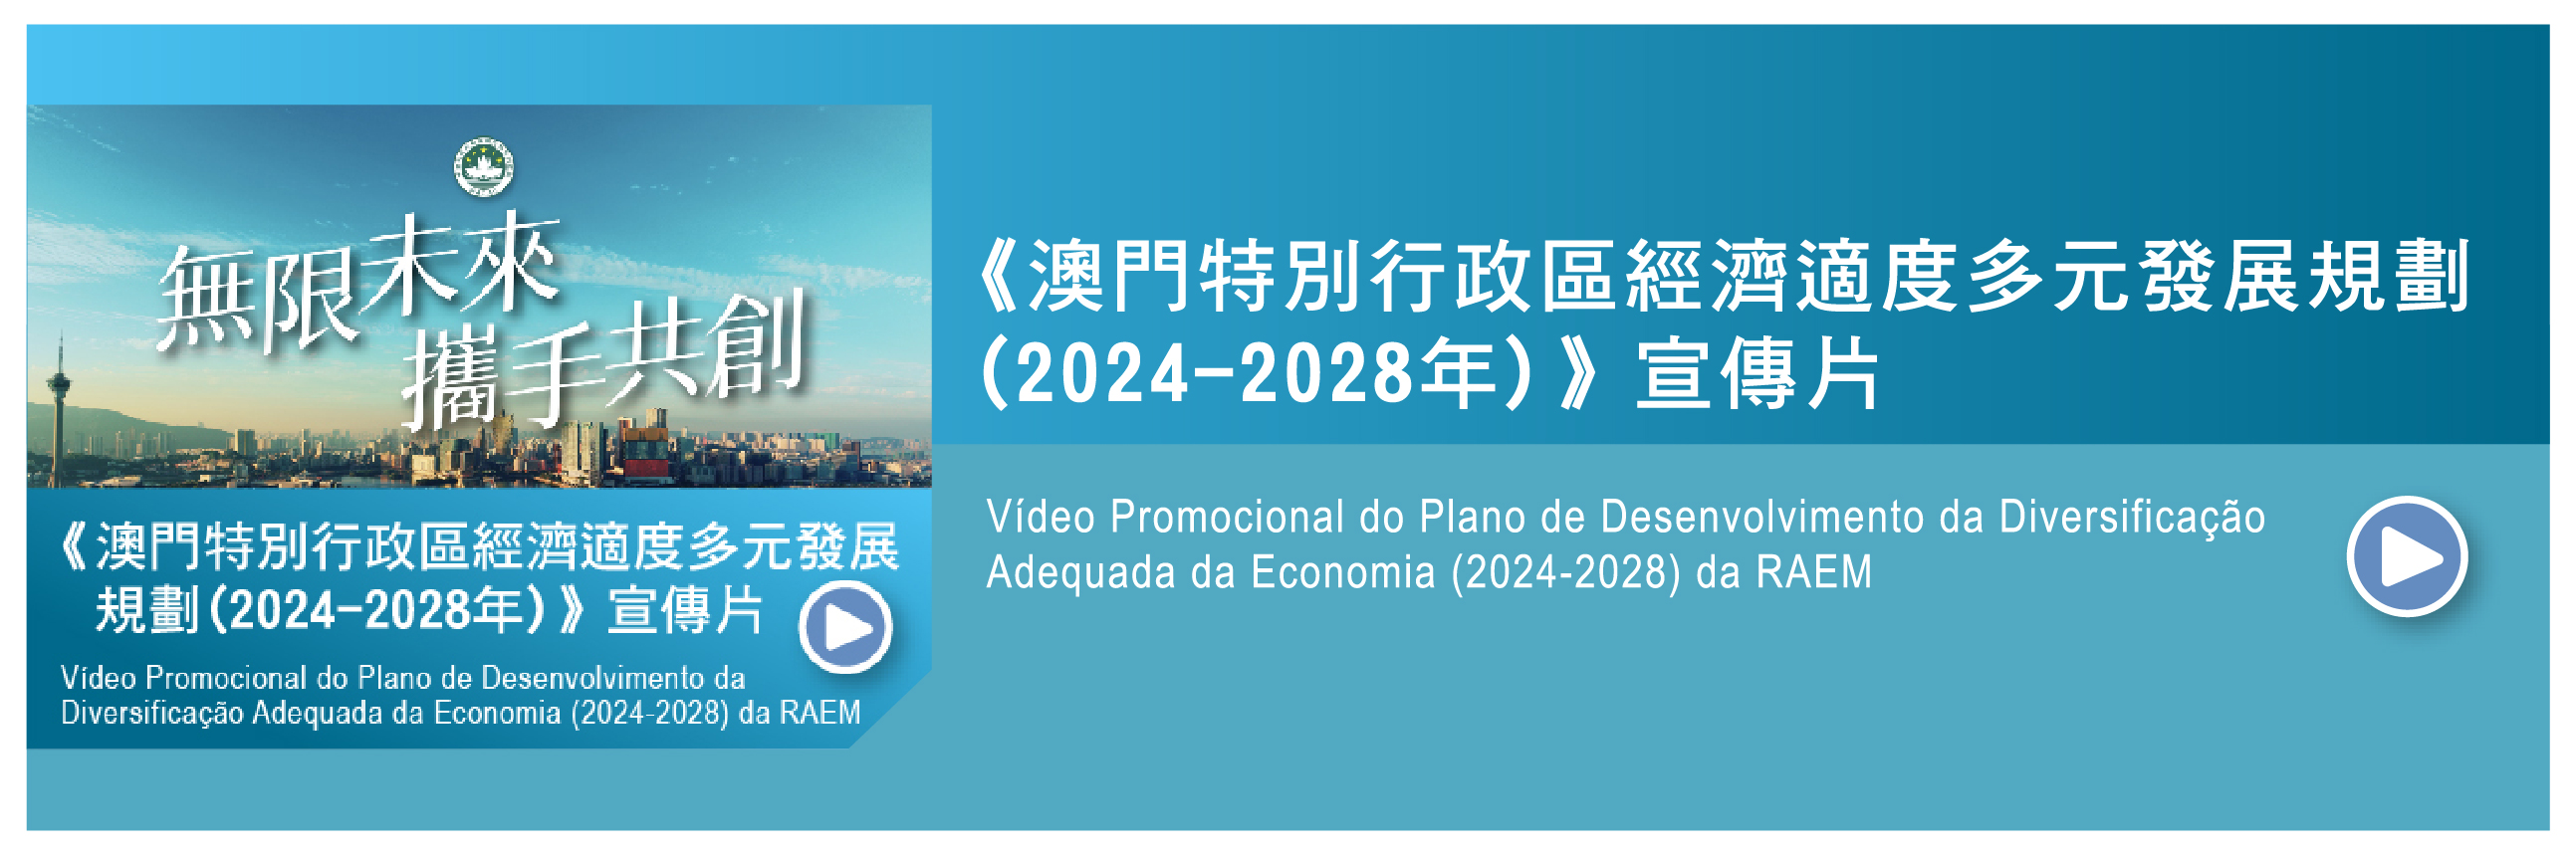 Vídeo Promocional do Plano de Desenvolvimento da Diversificado Adequada da Económia (2024-2028) da RAEM